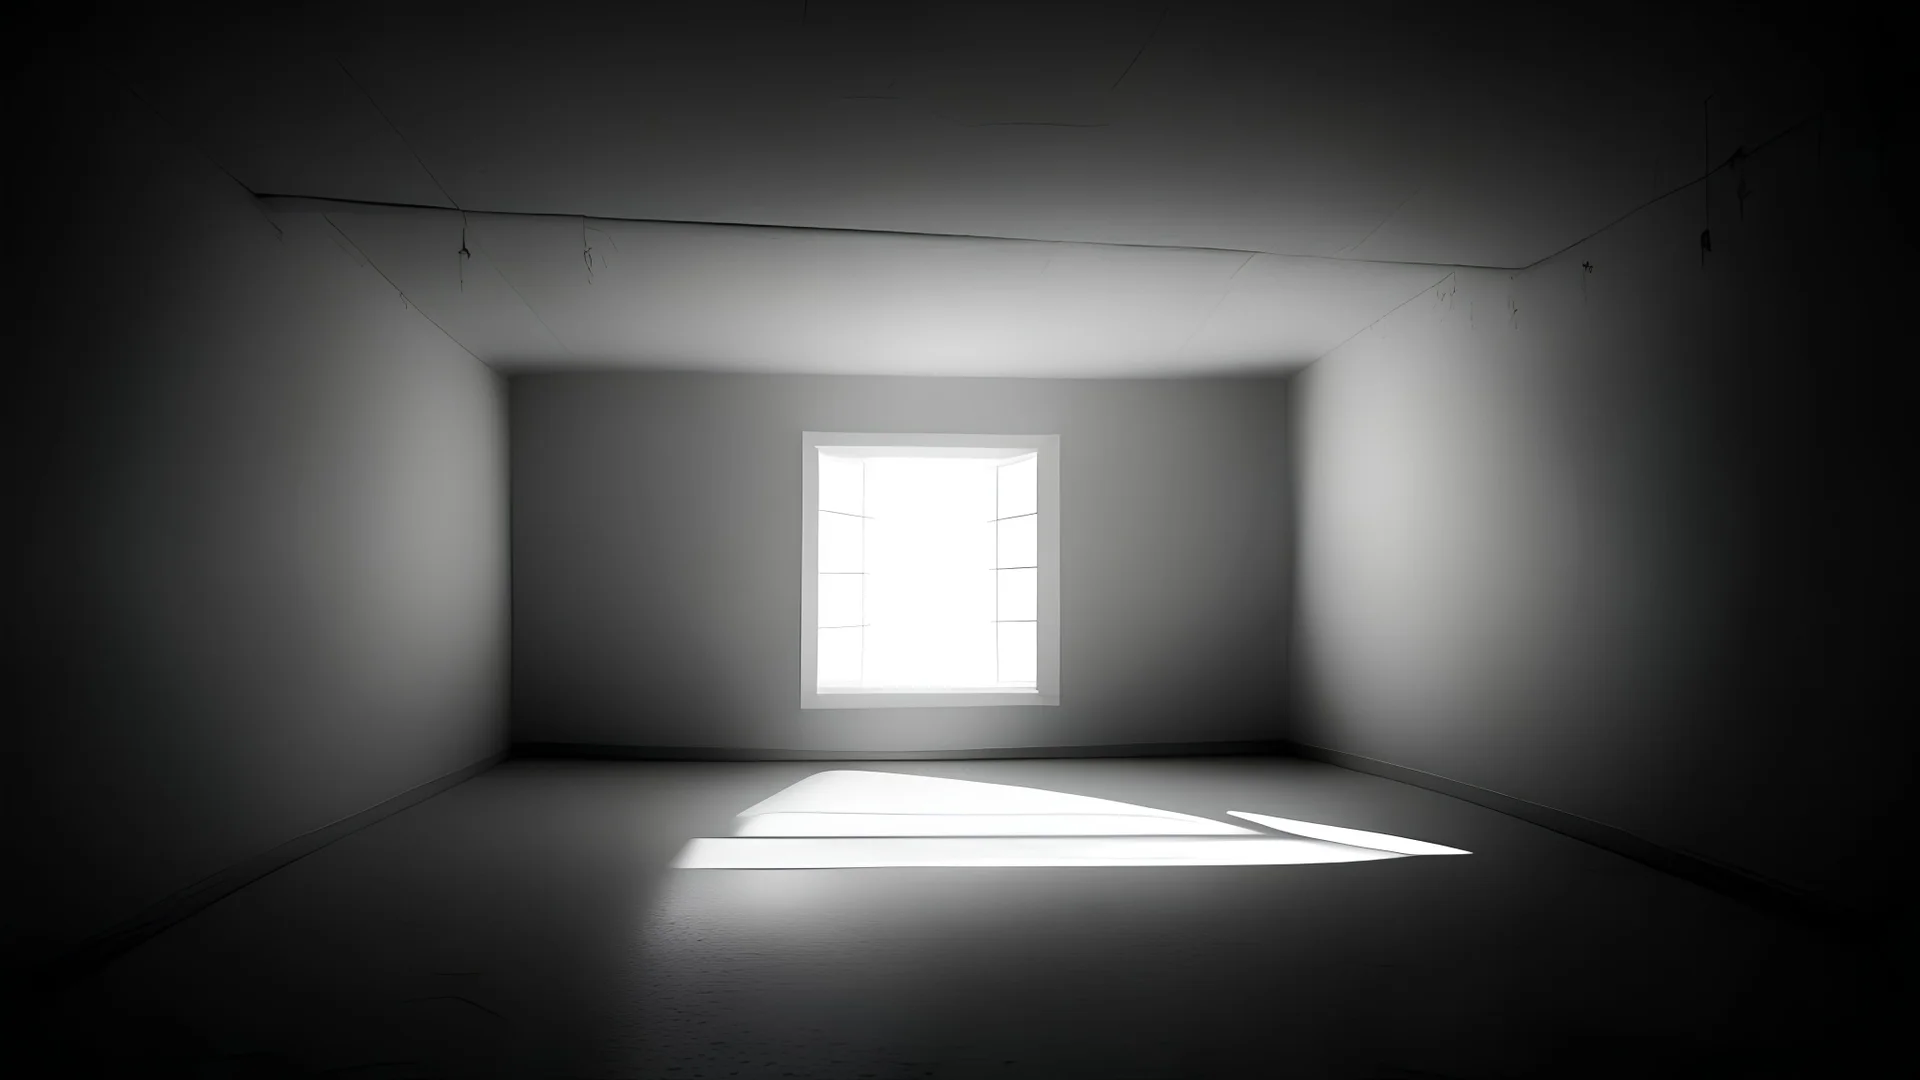 Empty light room